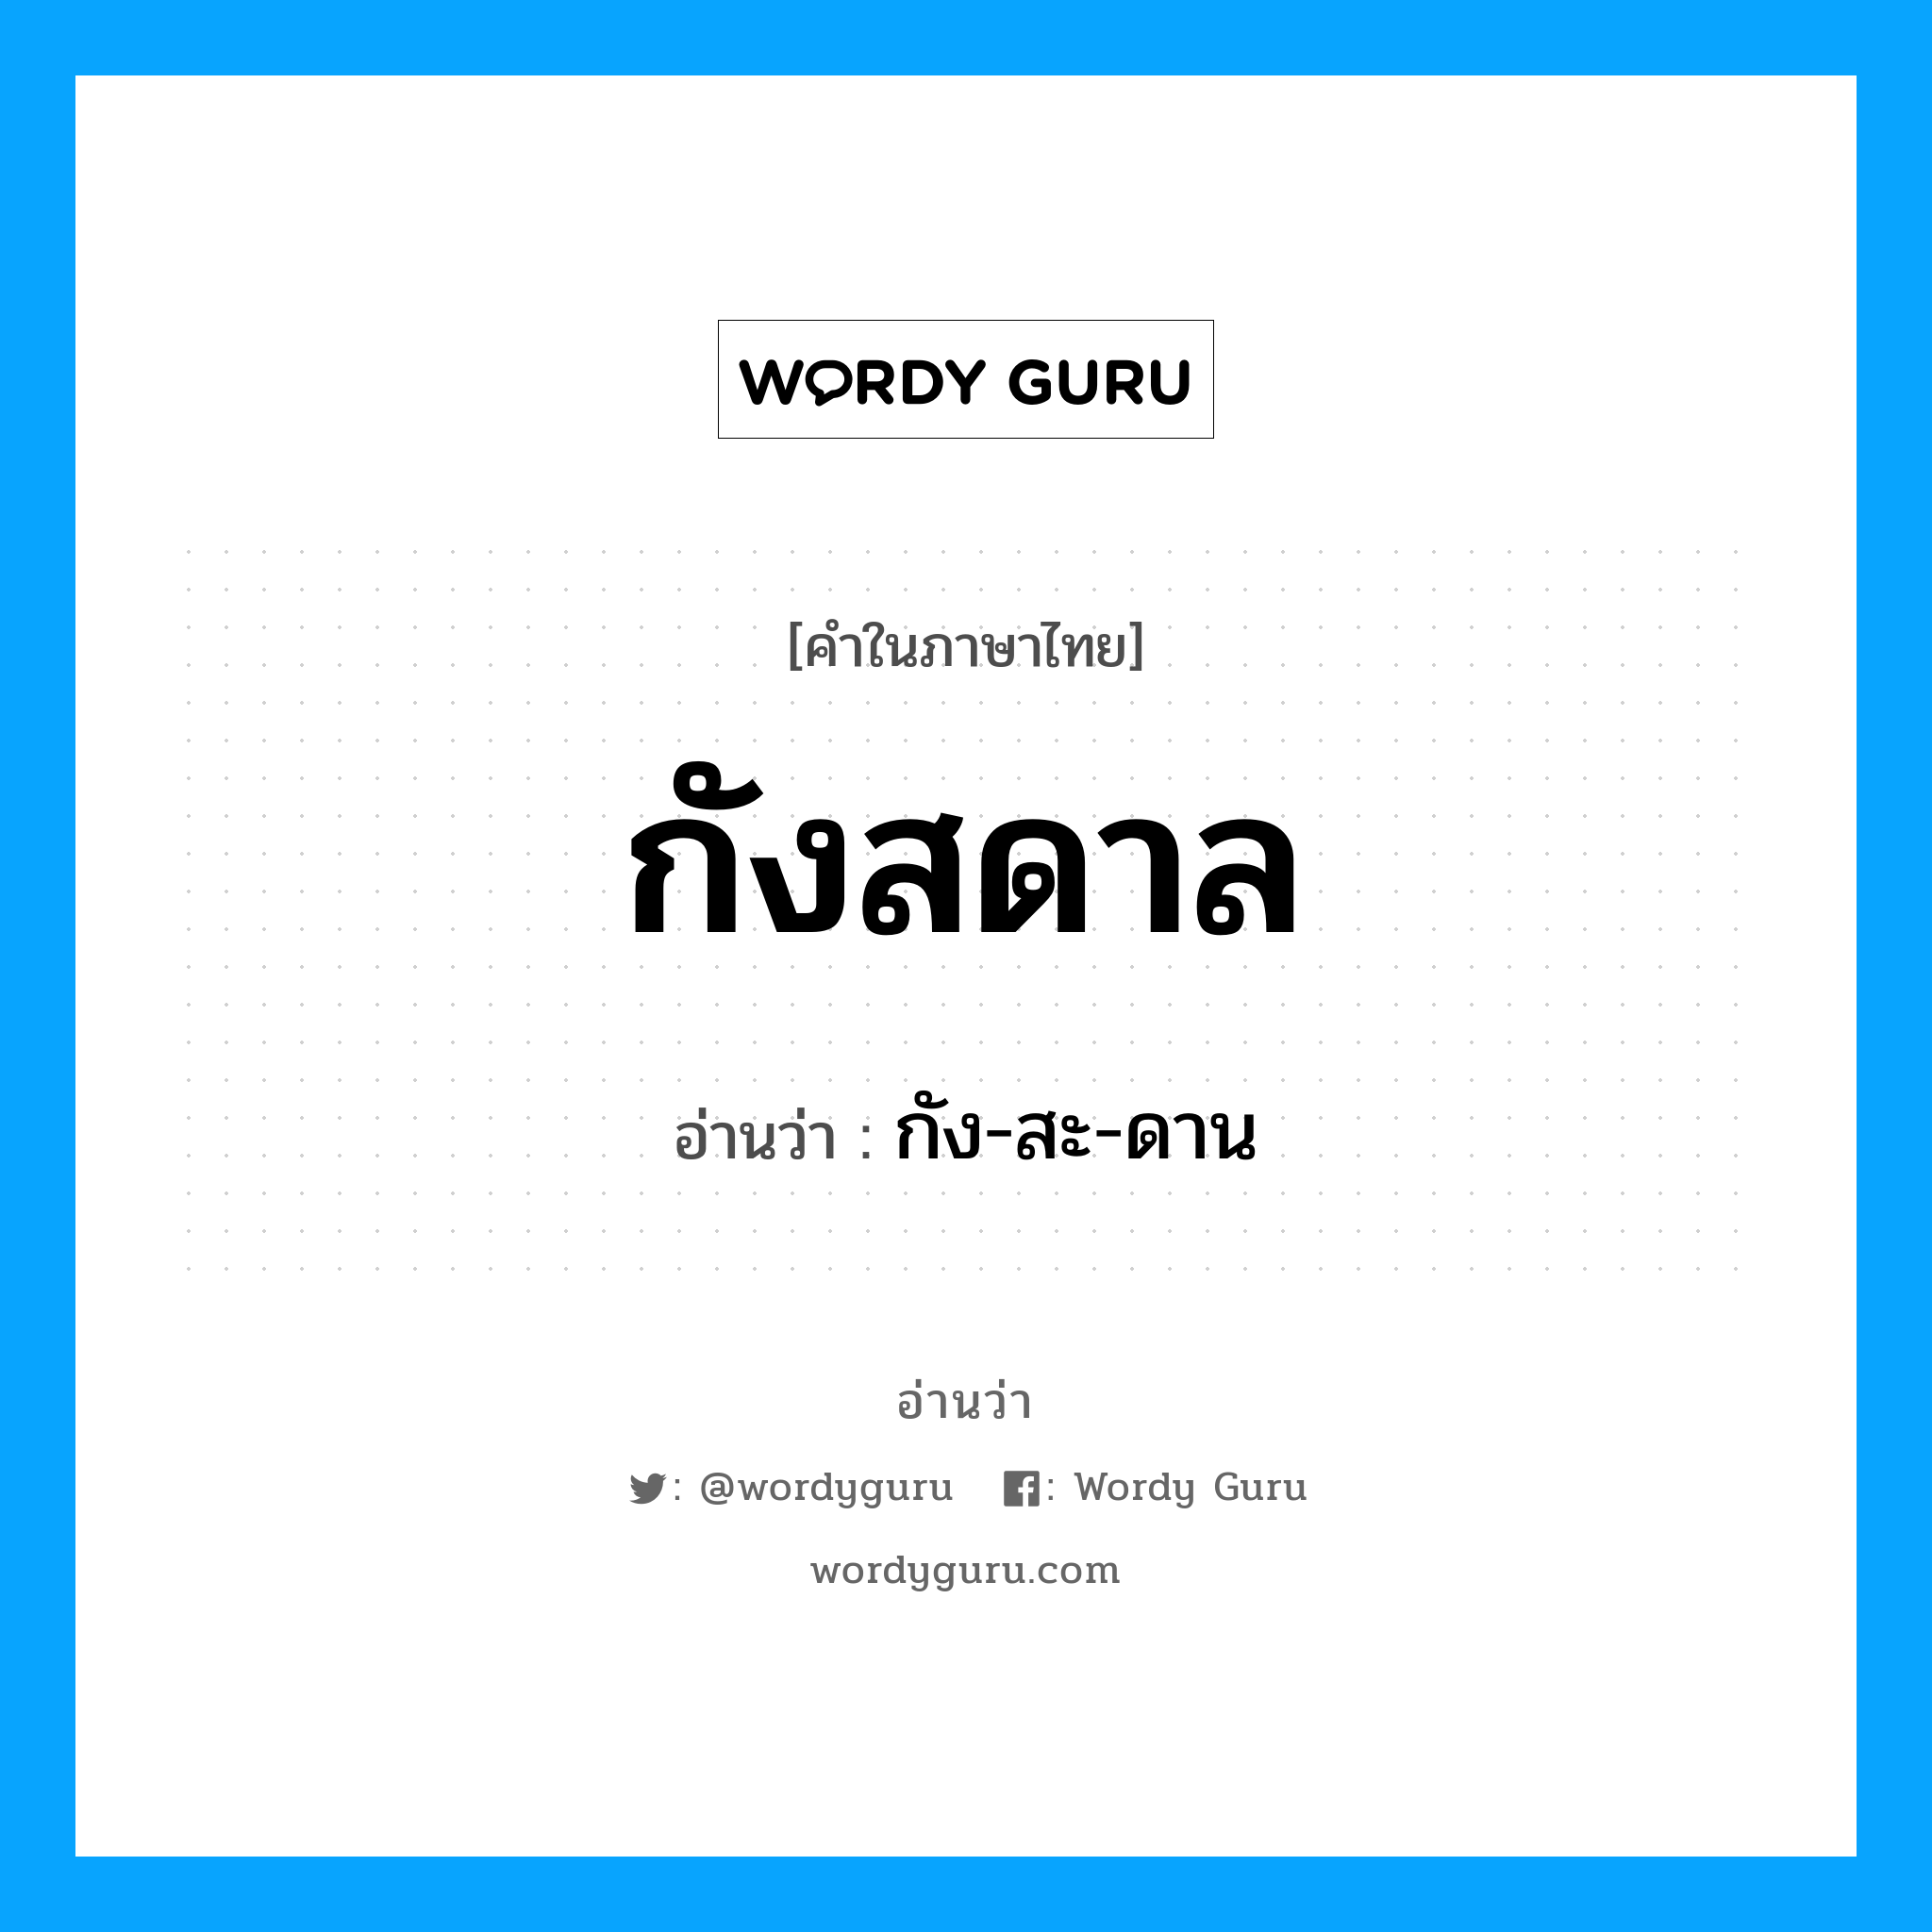 กัง-สะ-ดาน เป็นคำอ่านของคำไหน?, คำในภาษาไทย กัง-สะ-ดาน อ่านว่า กังสดาล